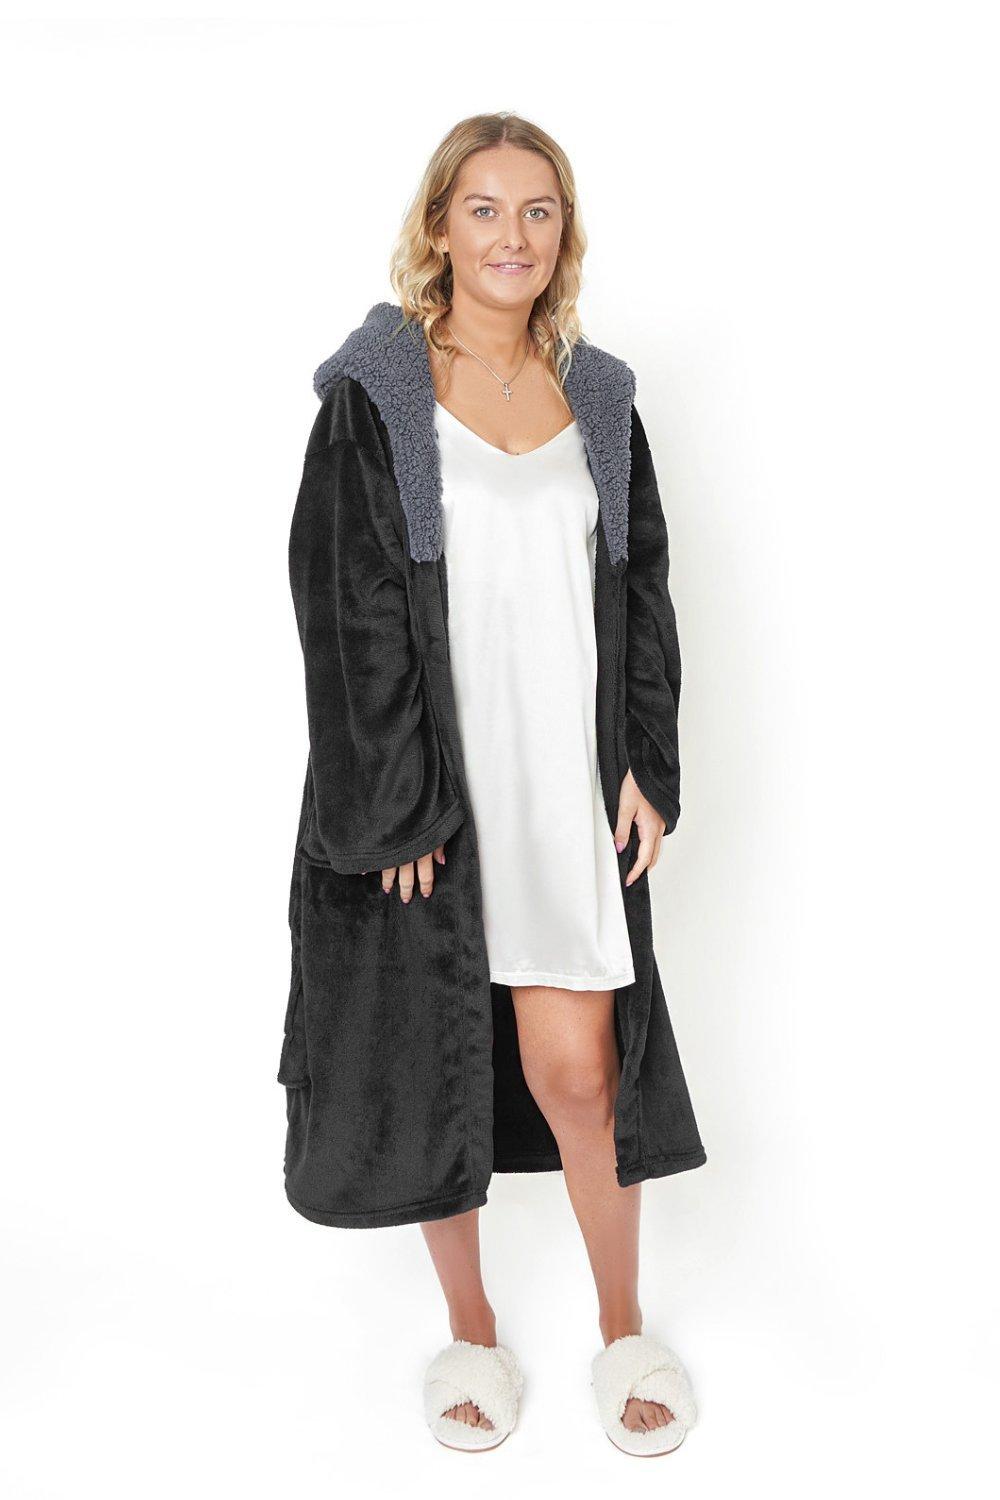 Flannel Fleece Hooded Dressing Gown Sherpa Bathrobe